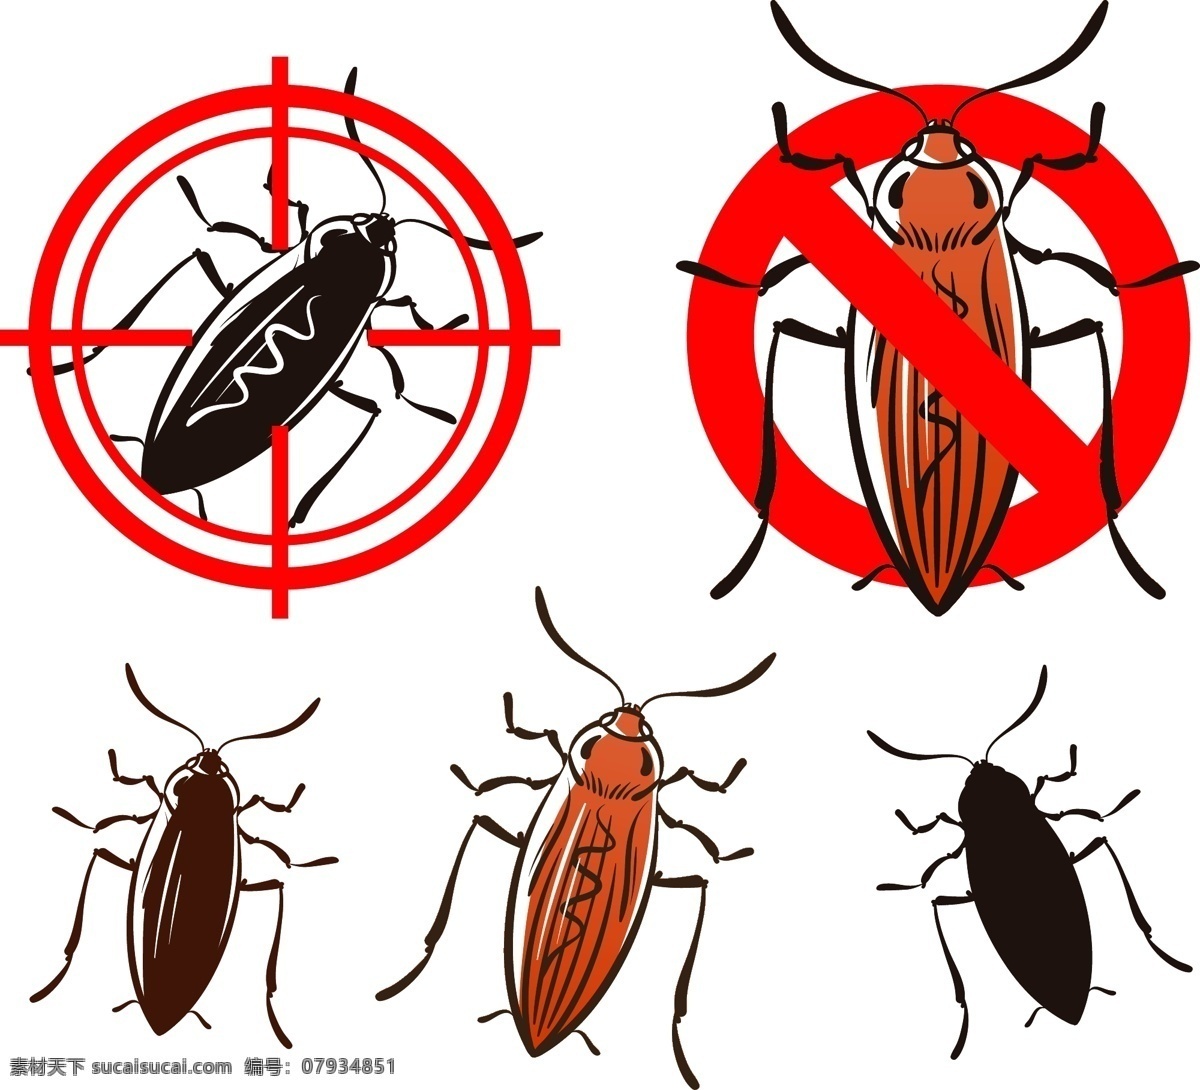 灭虫 蚊虫 有害昆虫 臭虫 蚊子 蟑螂 蛾子 老鼠 四害 蚂蚁 跳蚤 杀虫器 野生动物 生物世界 昆虫